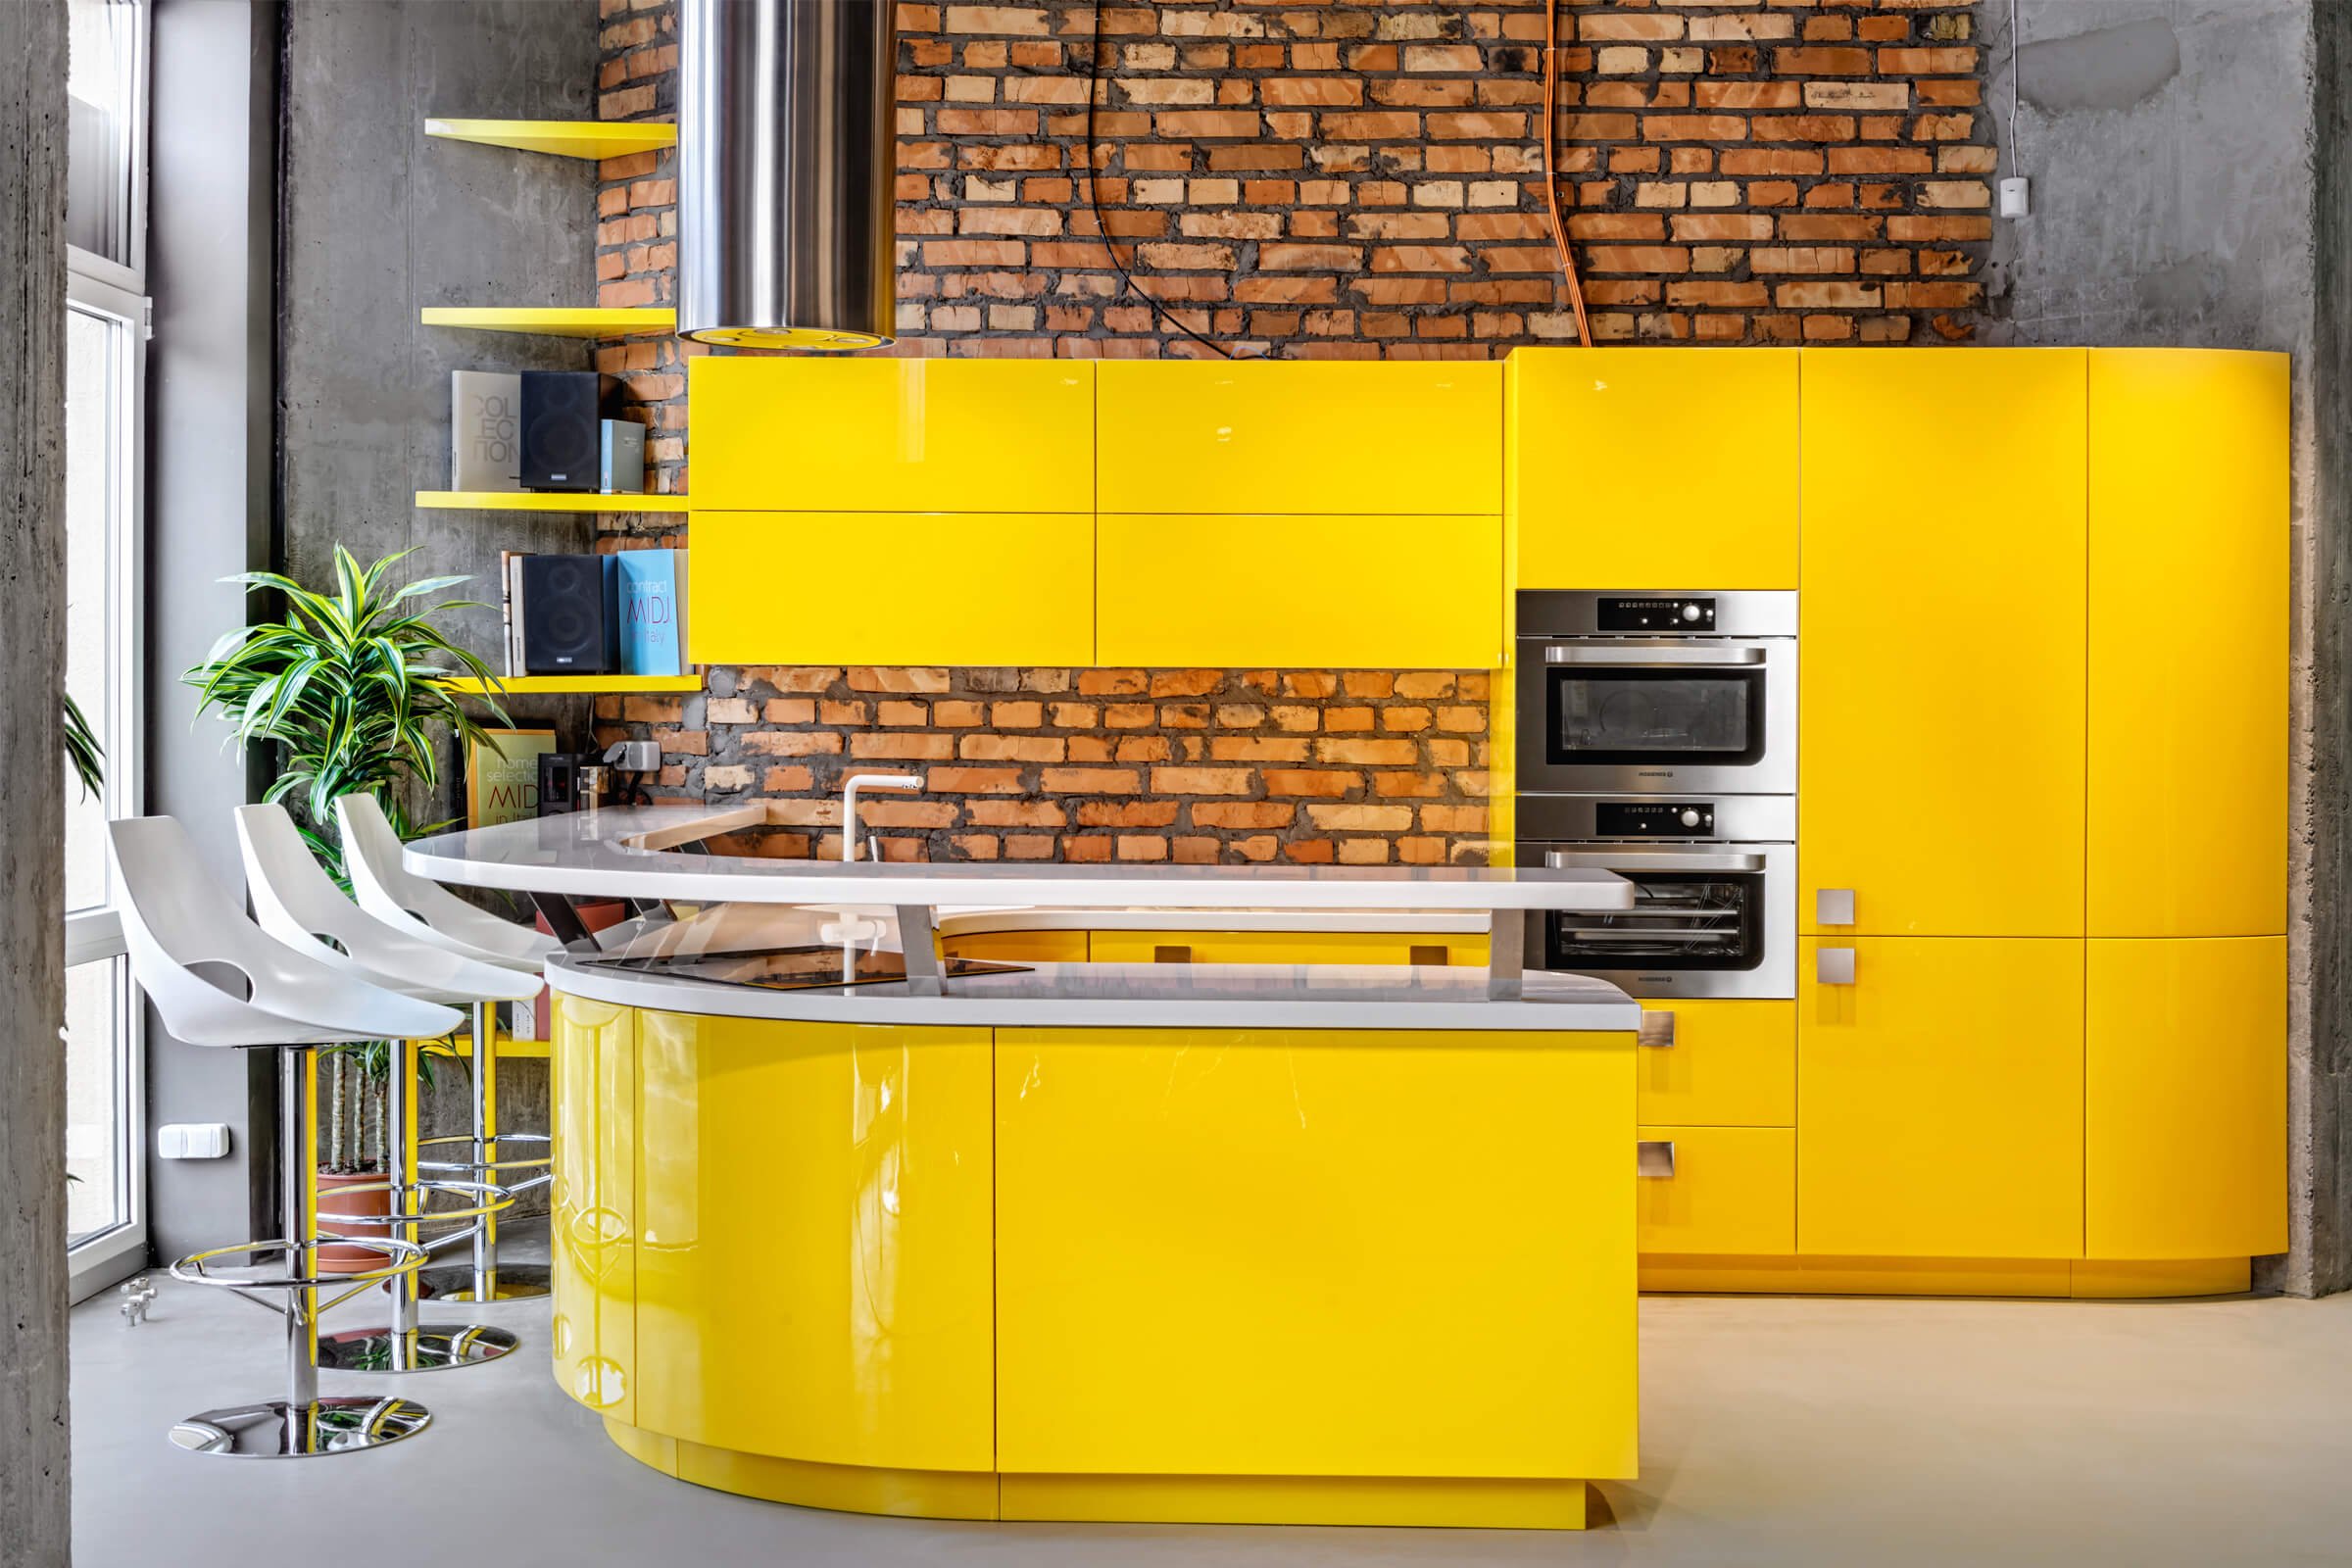 Купить желтую кухню. Желтые кухни. Желтый кухонный гарнитур. Кухня в желтом стиле. Желтая кухня в интерьере.